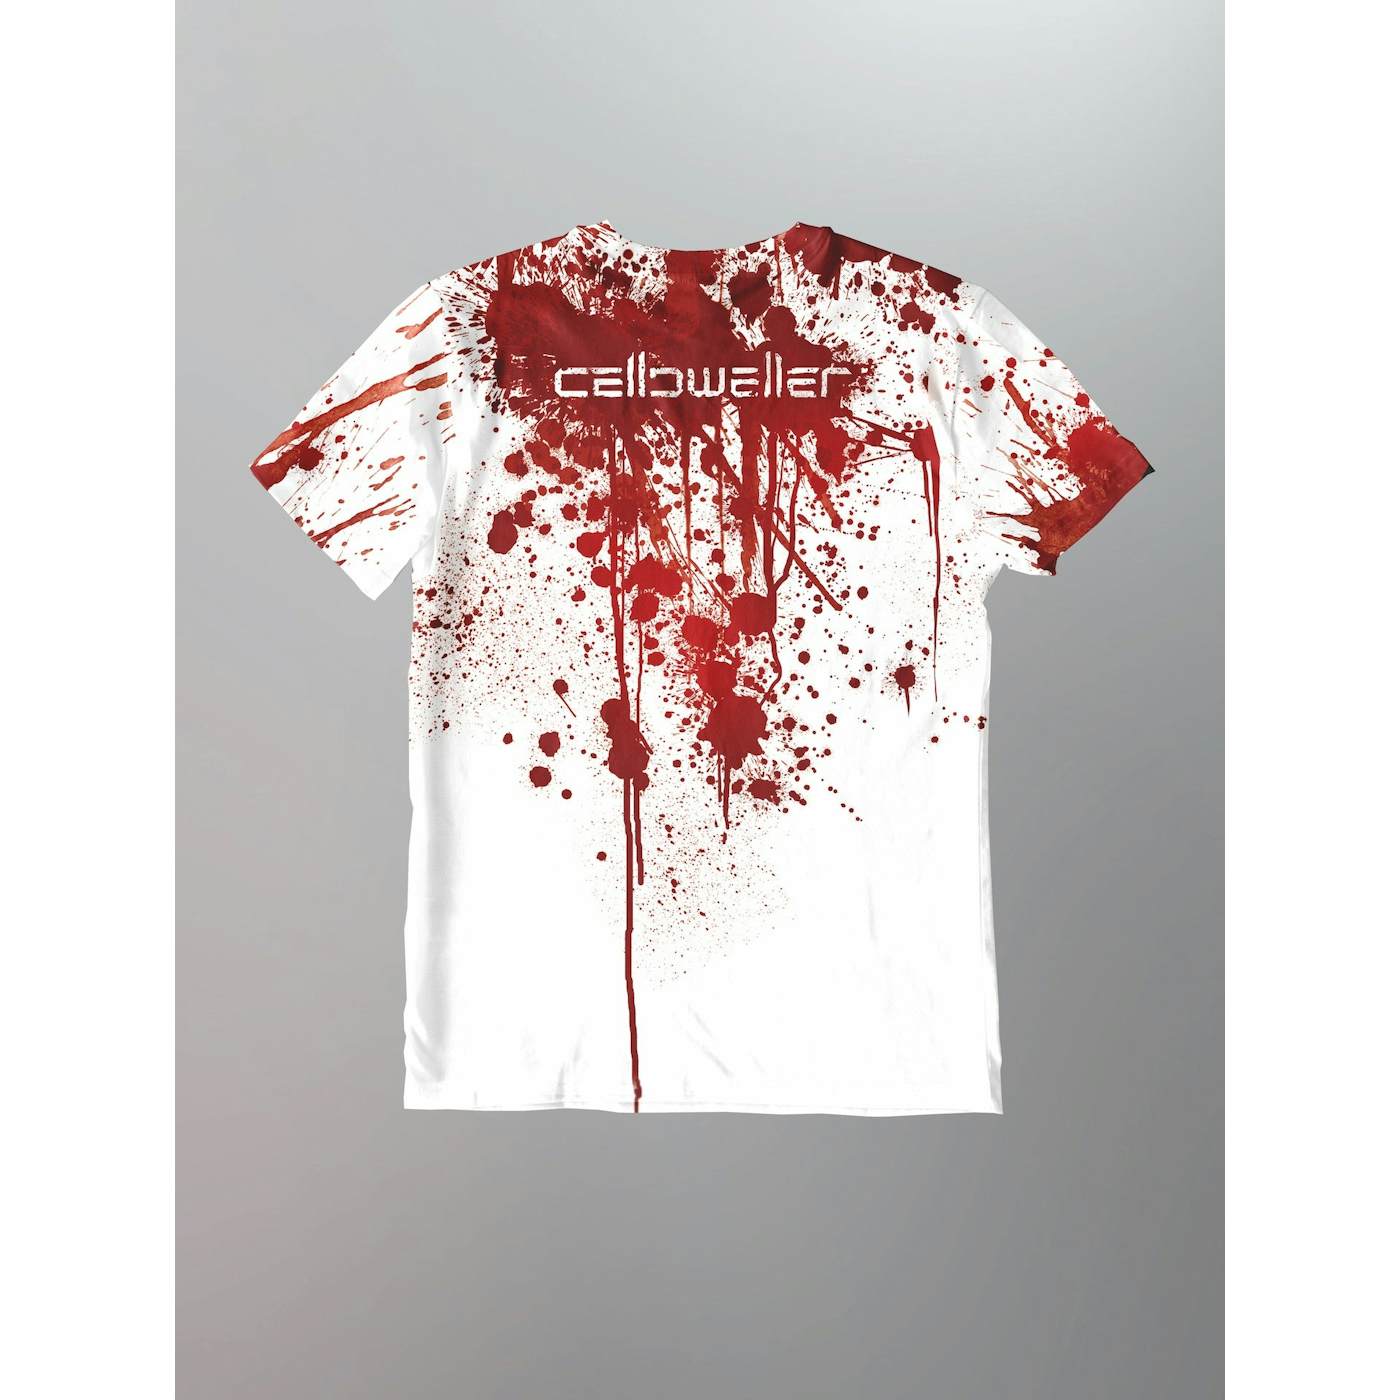 Celldweller - Bloodsplatter Shirt